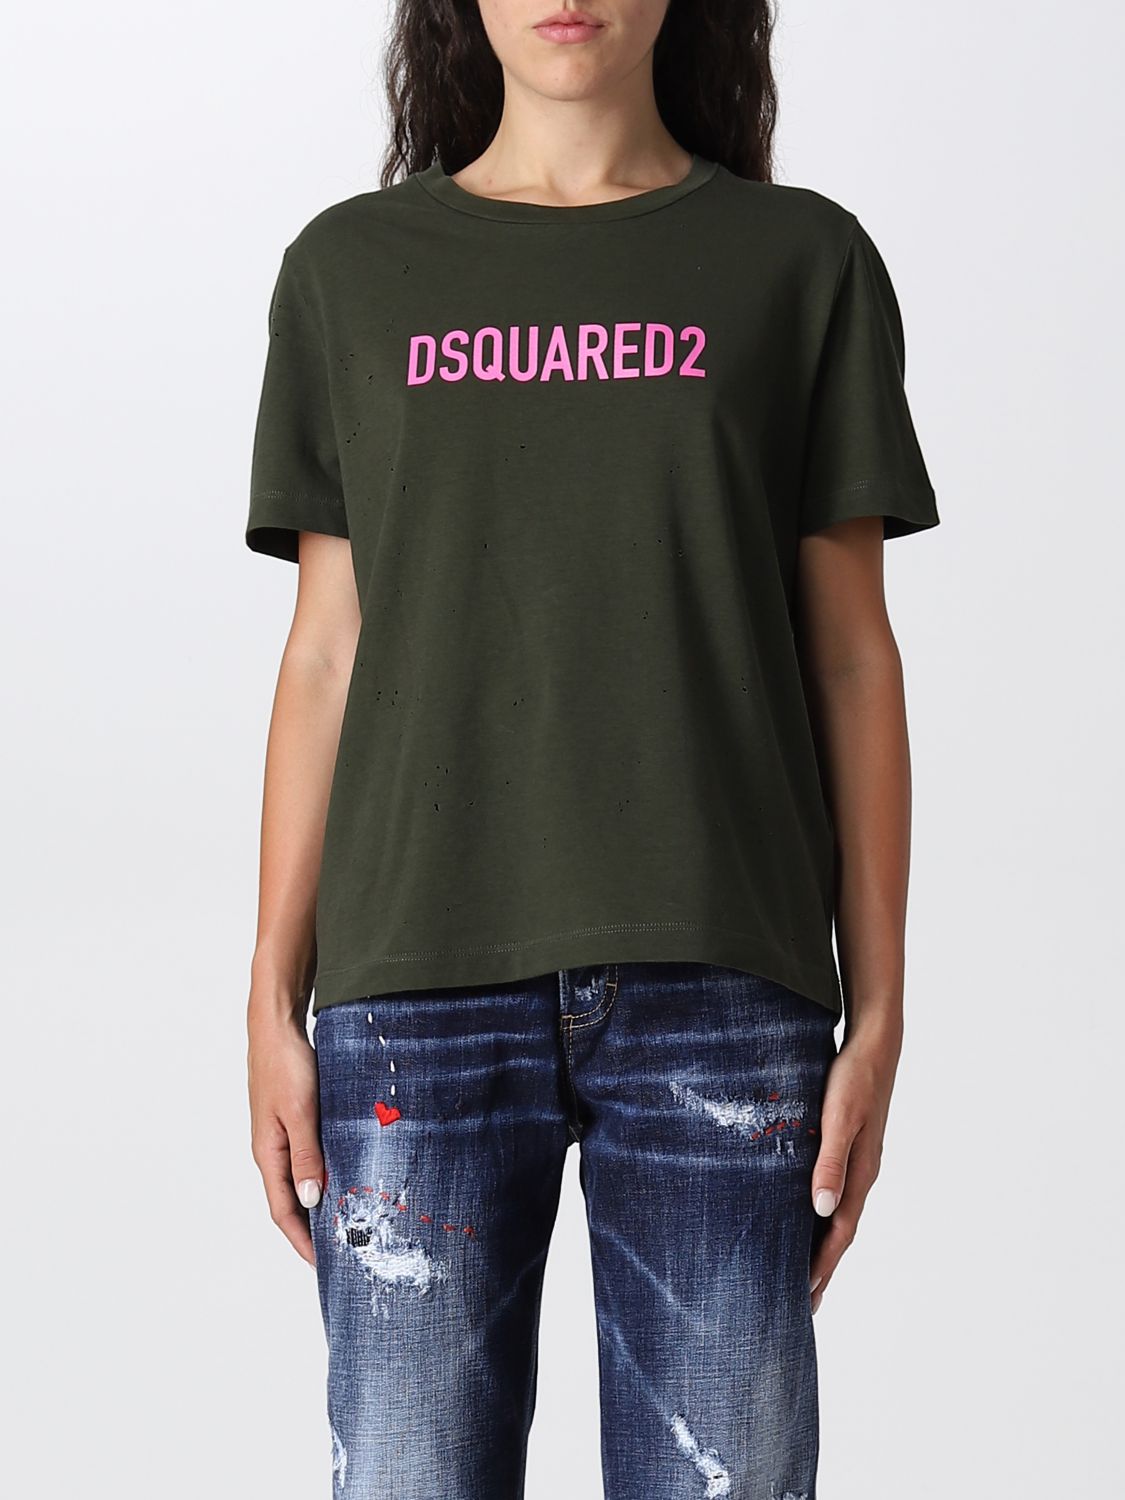 Tシャツ Dsquared2: Tシャツ Dsquared2 レディース ミリタリー 1